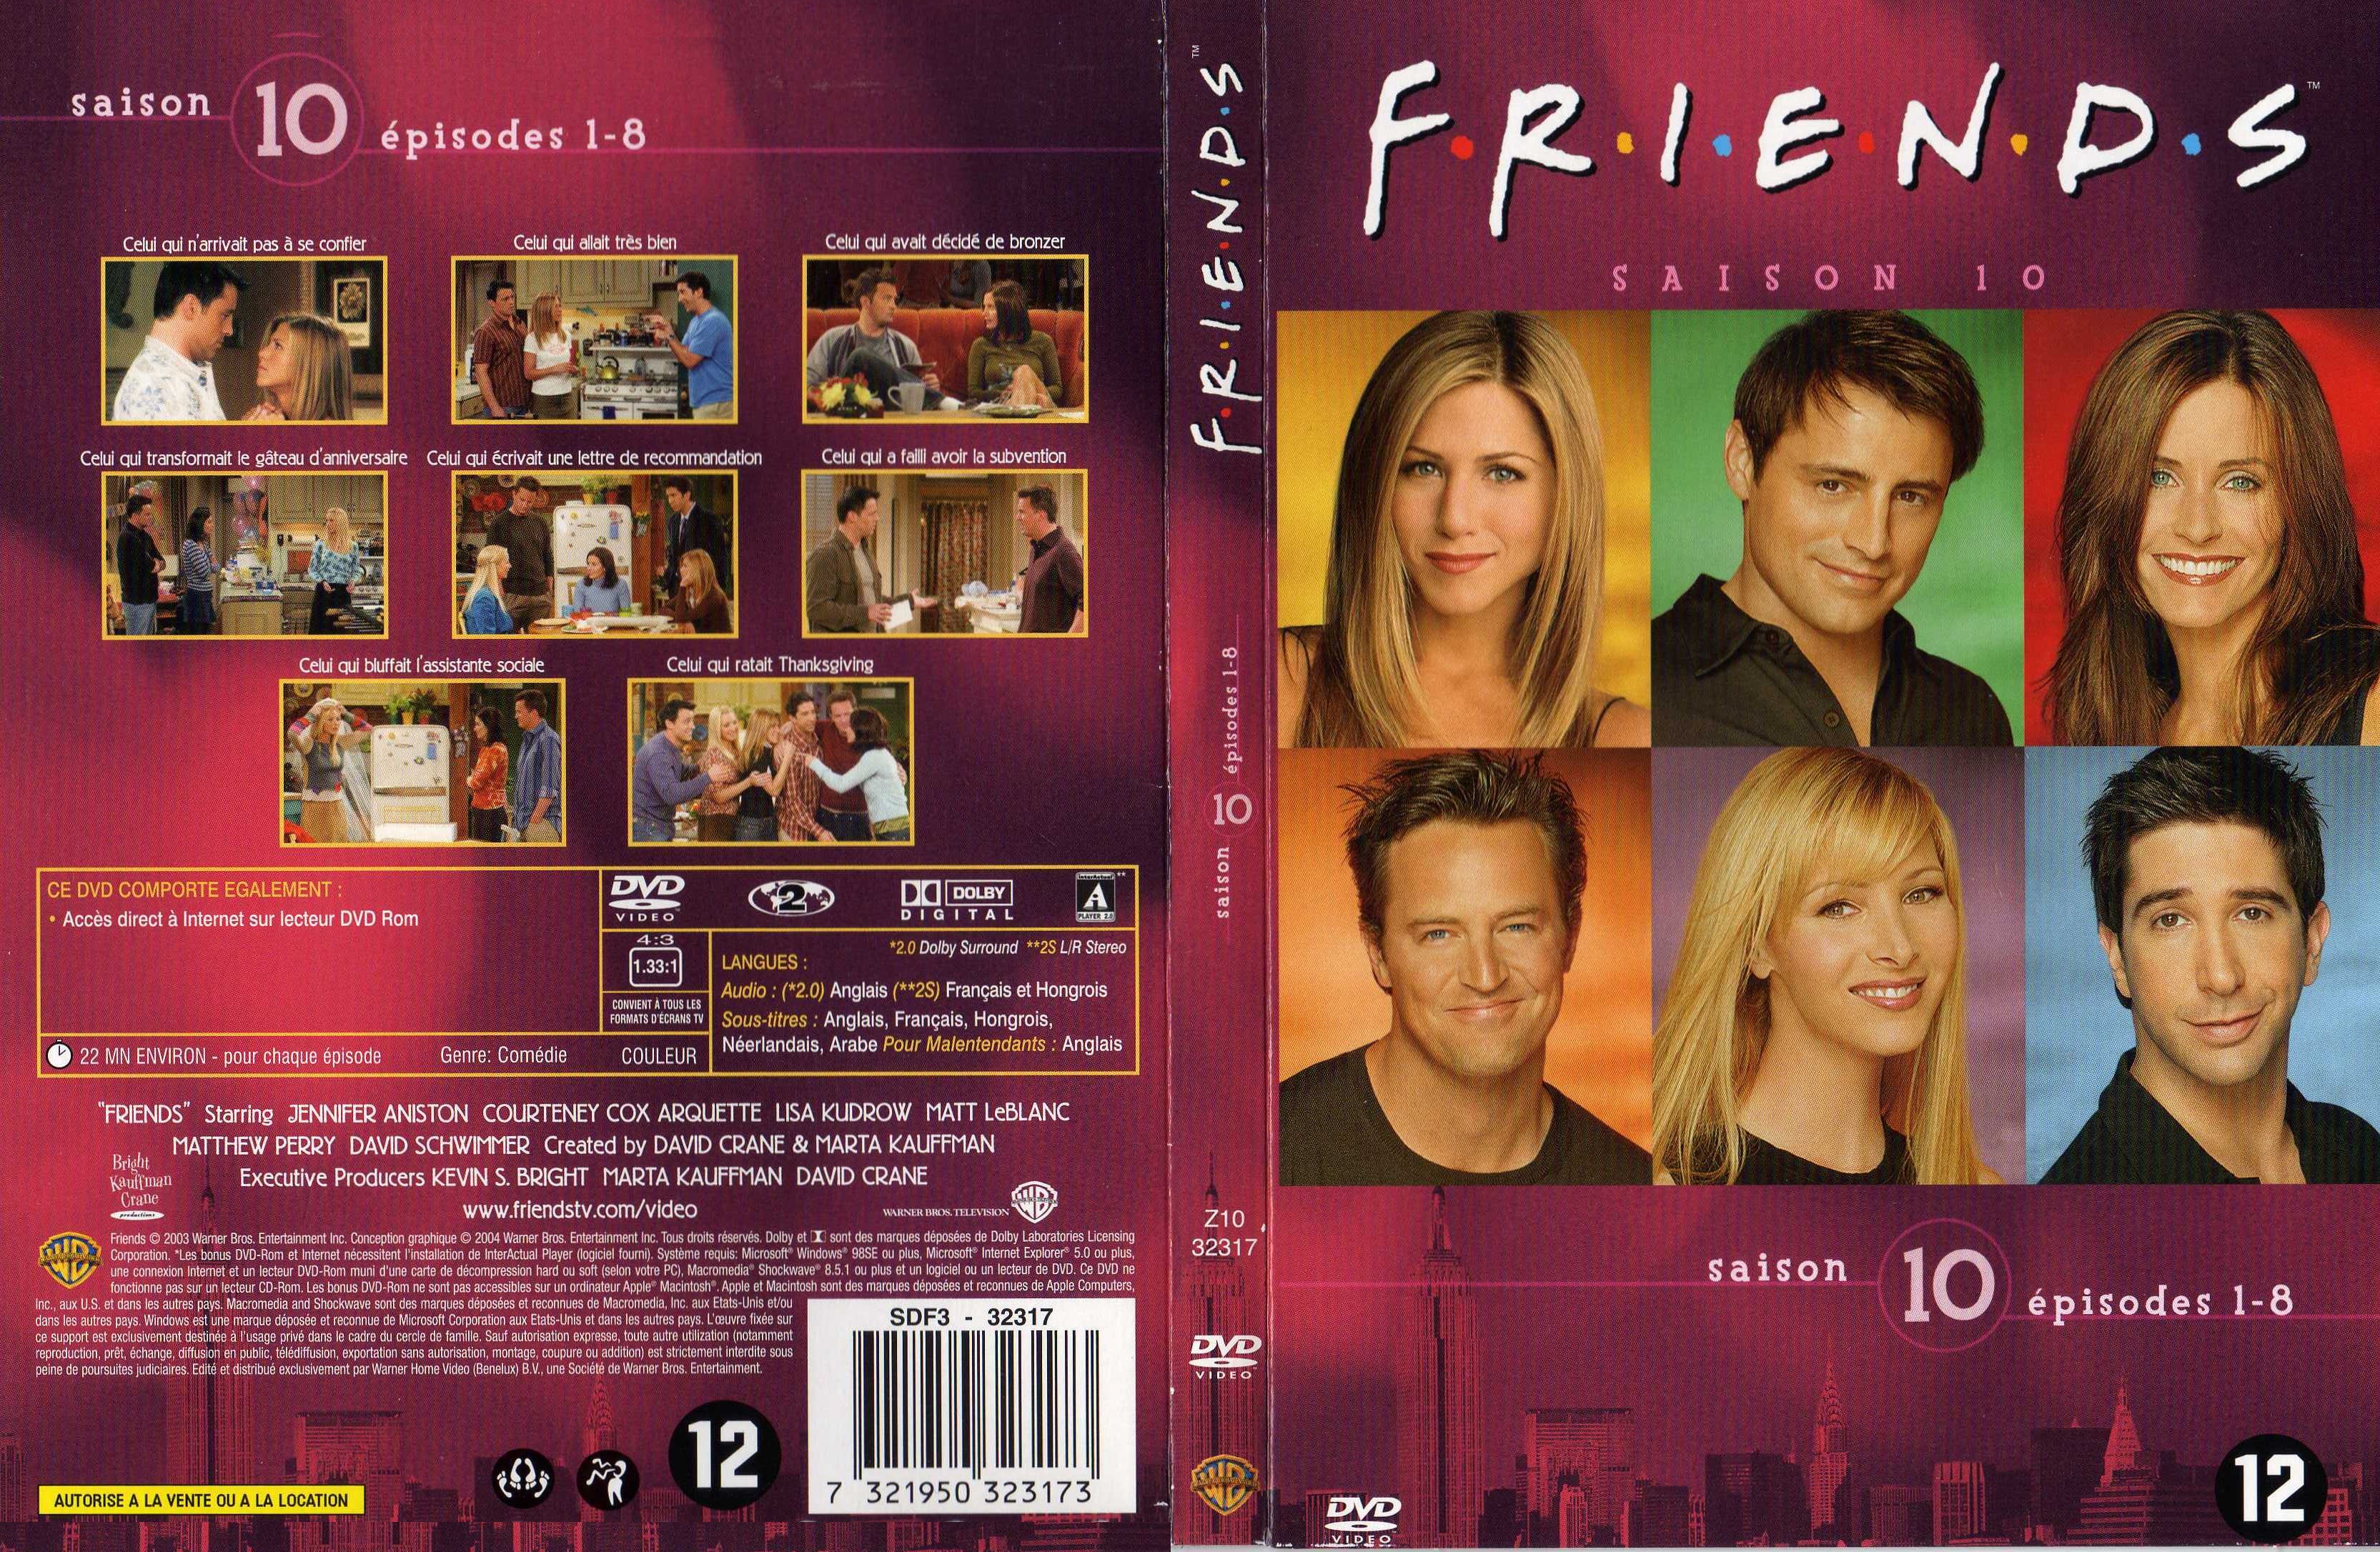 Jaquette DVD Friends saison 10 dvd 1 v2